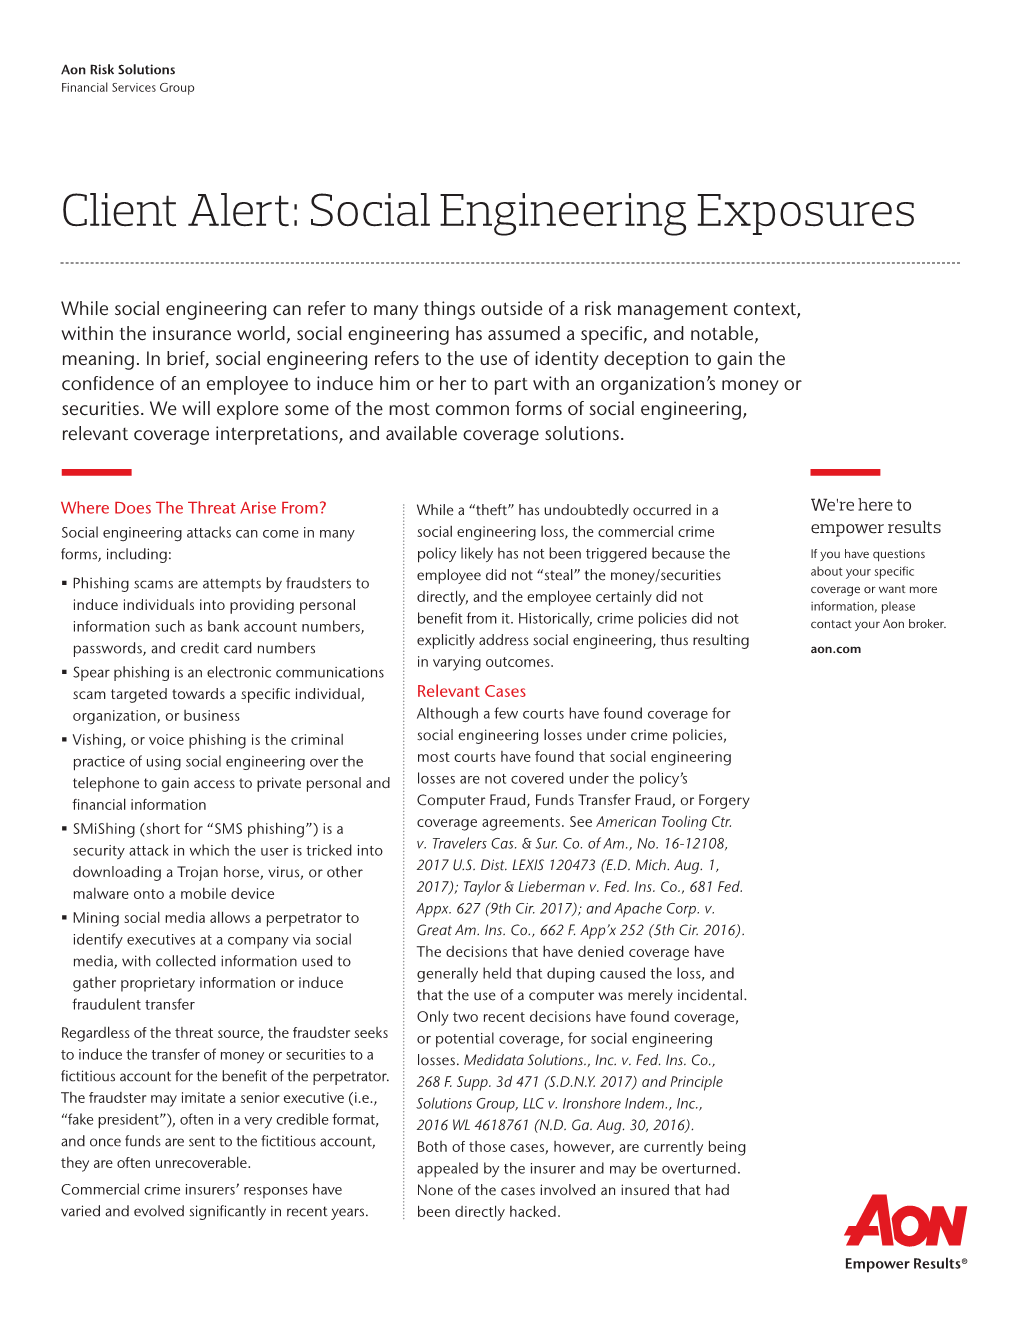 Social Engineering Exposures